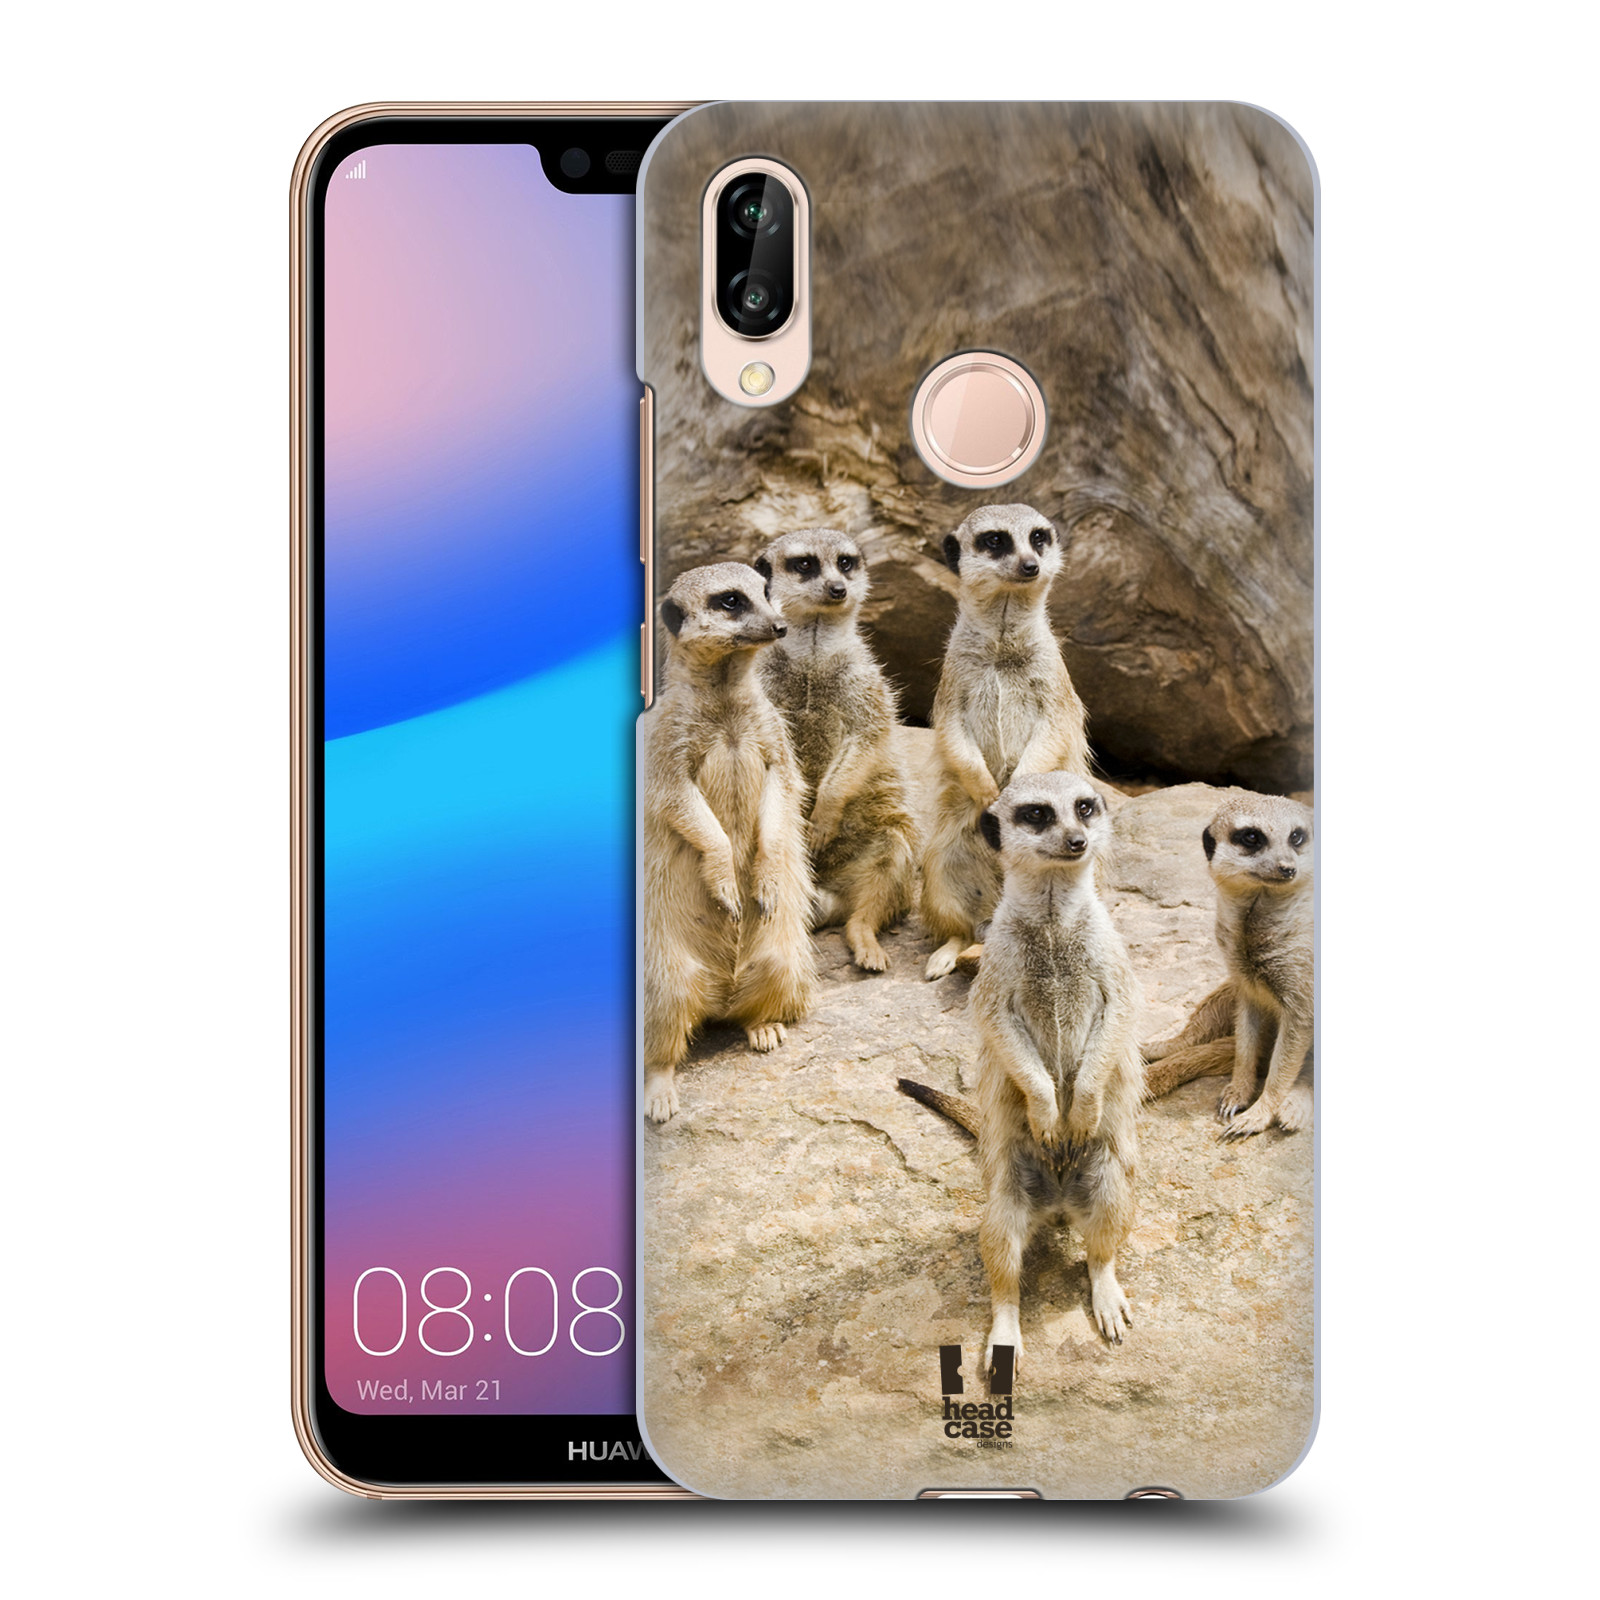 Zadní obal pro mobil Huawei P20 LITE - HEAD CASE - Svět zvířat roztomilé surikaty